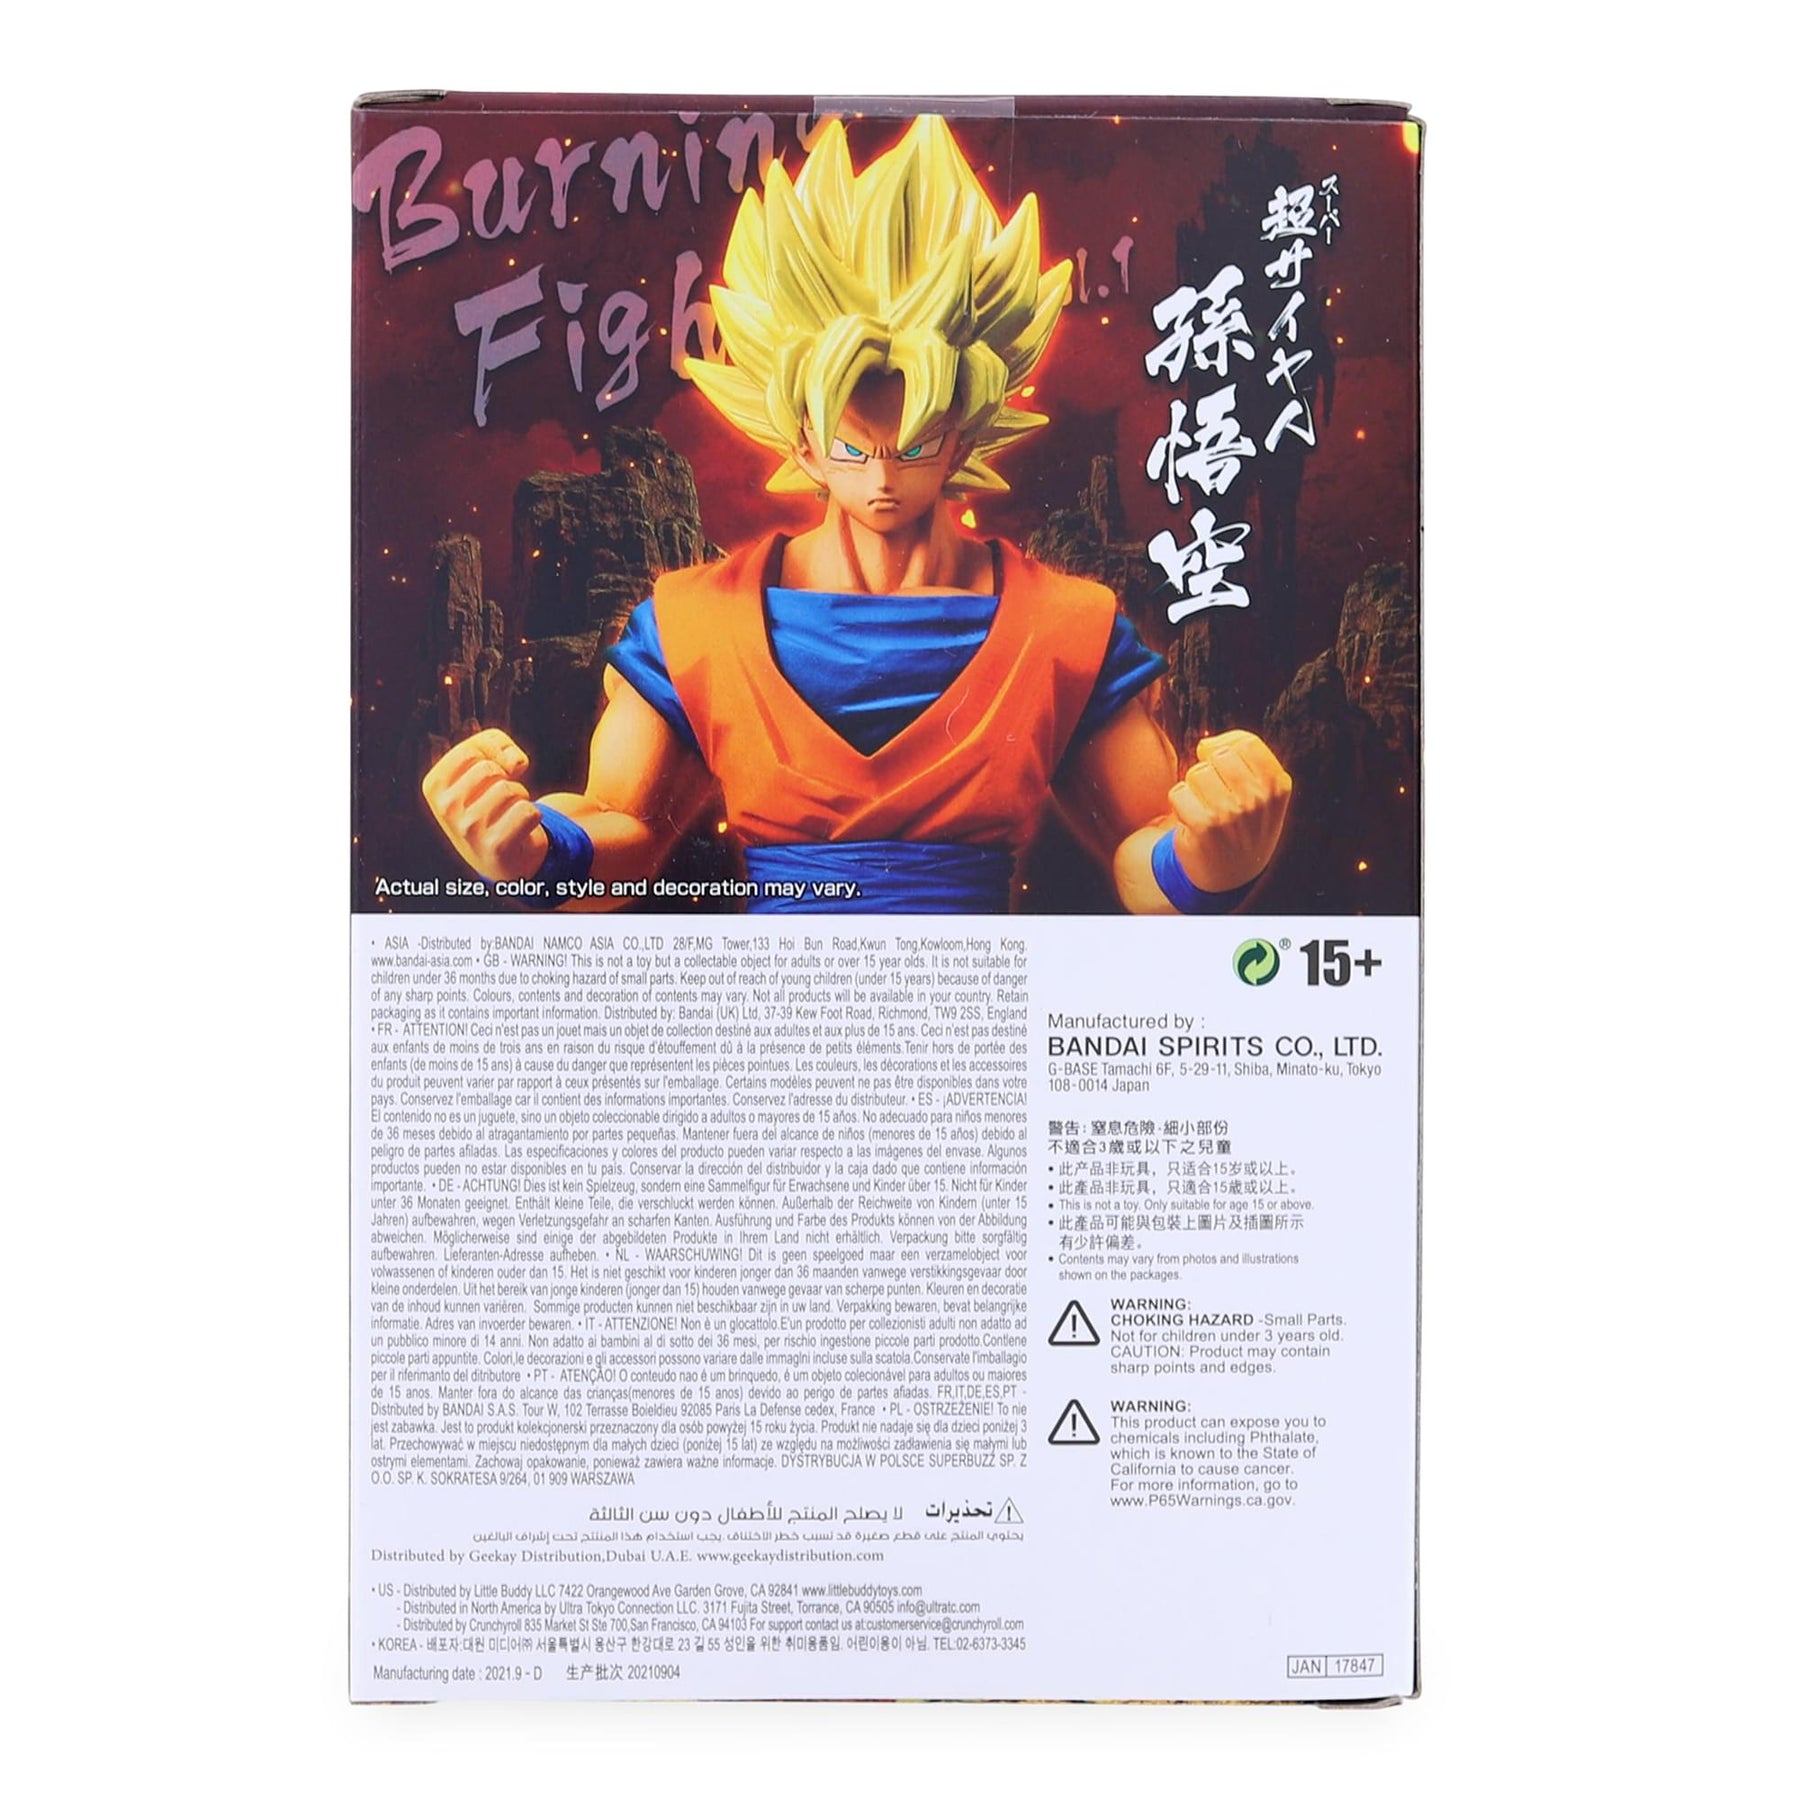  Banpresto 17847 Dragon Ball Z Burning Fighters Vol. 1